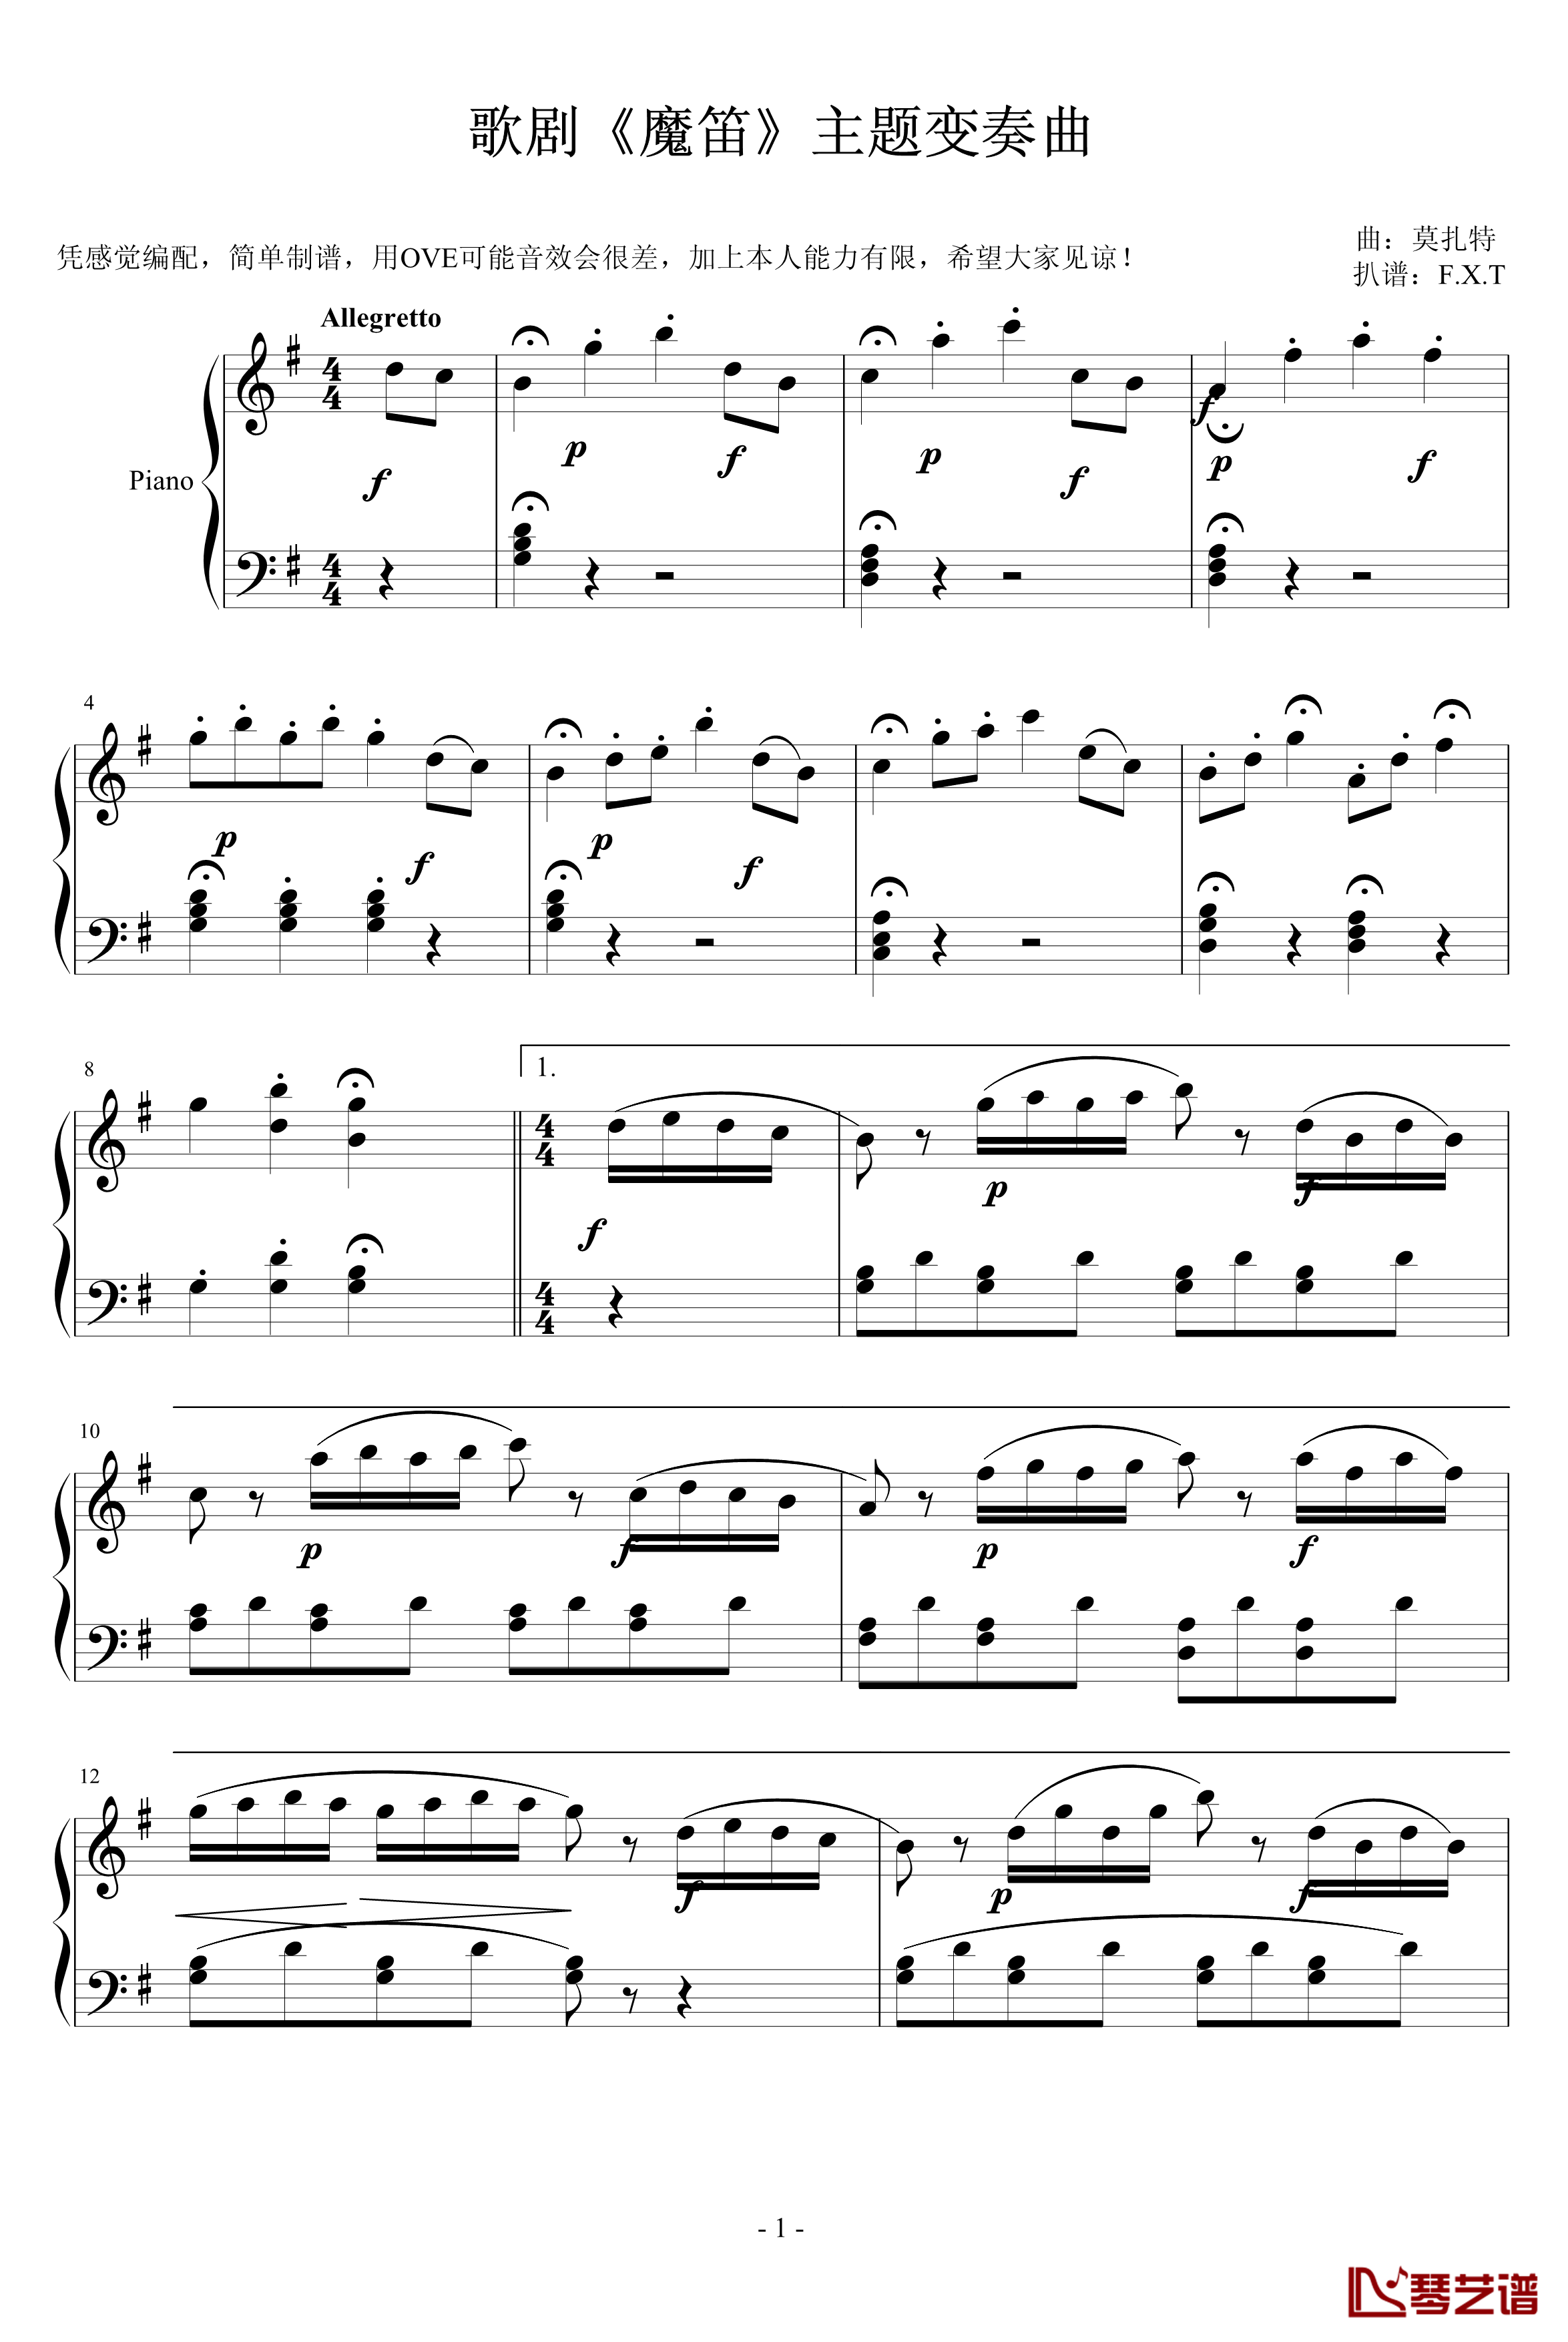 《魔笛》主题变奏曲钢琴谱-莫扎特-歌剧1